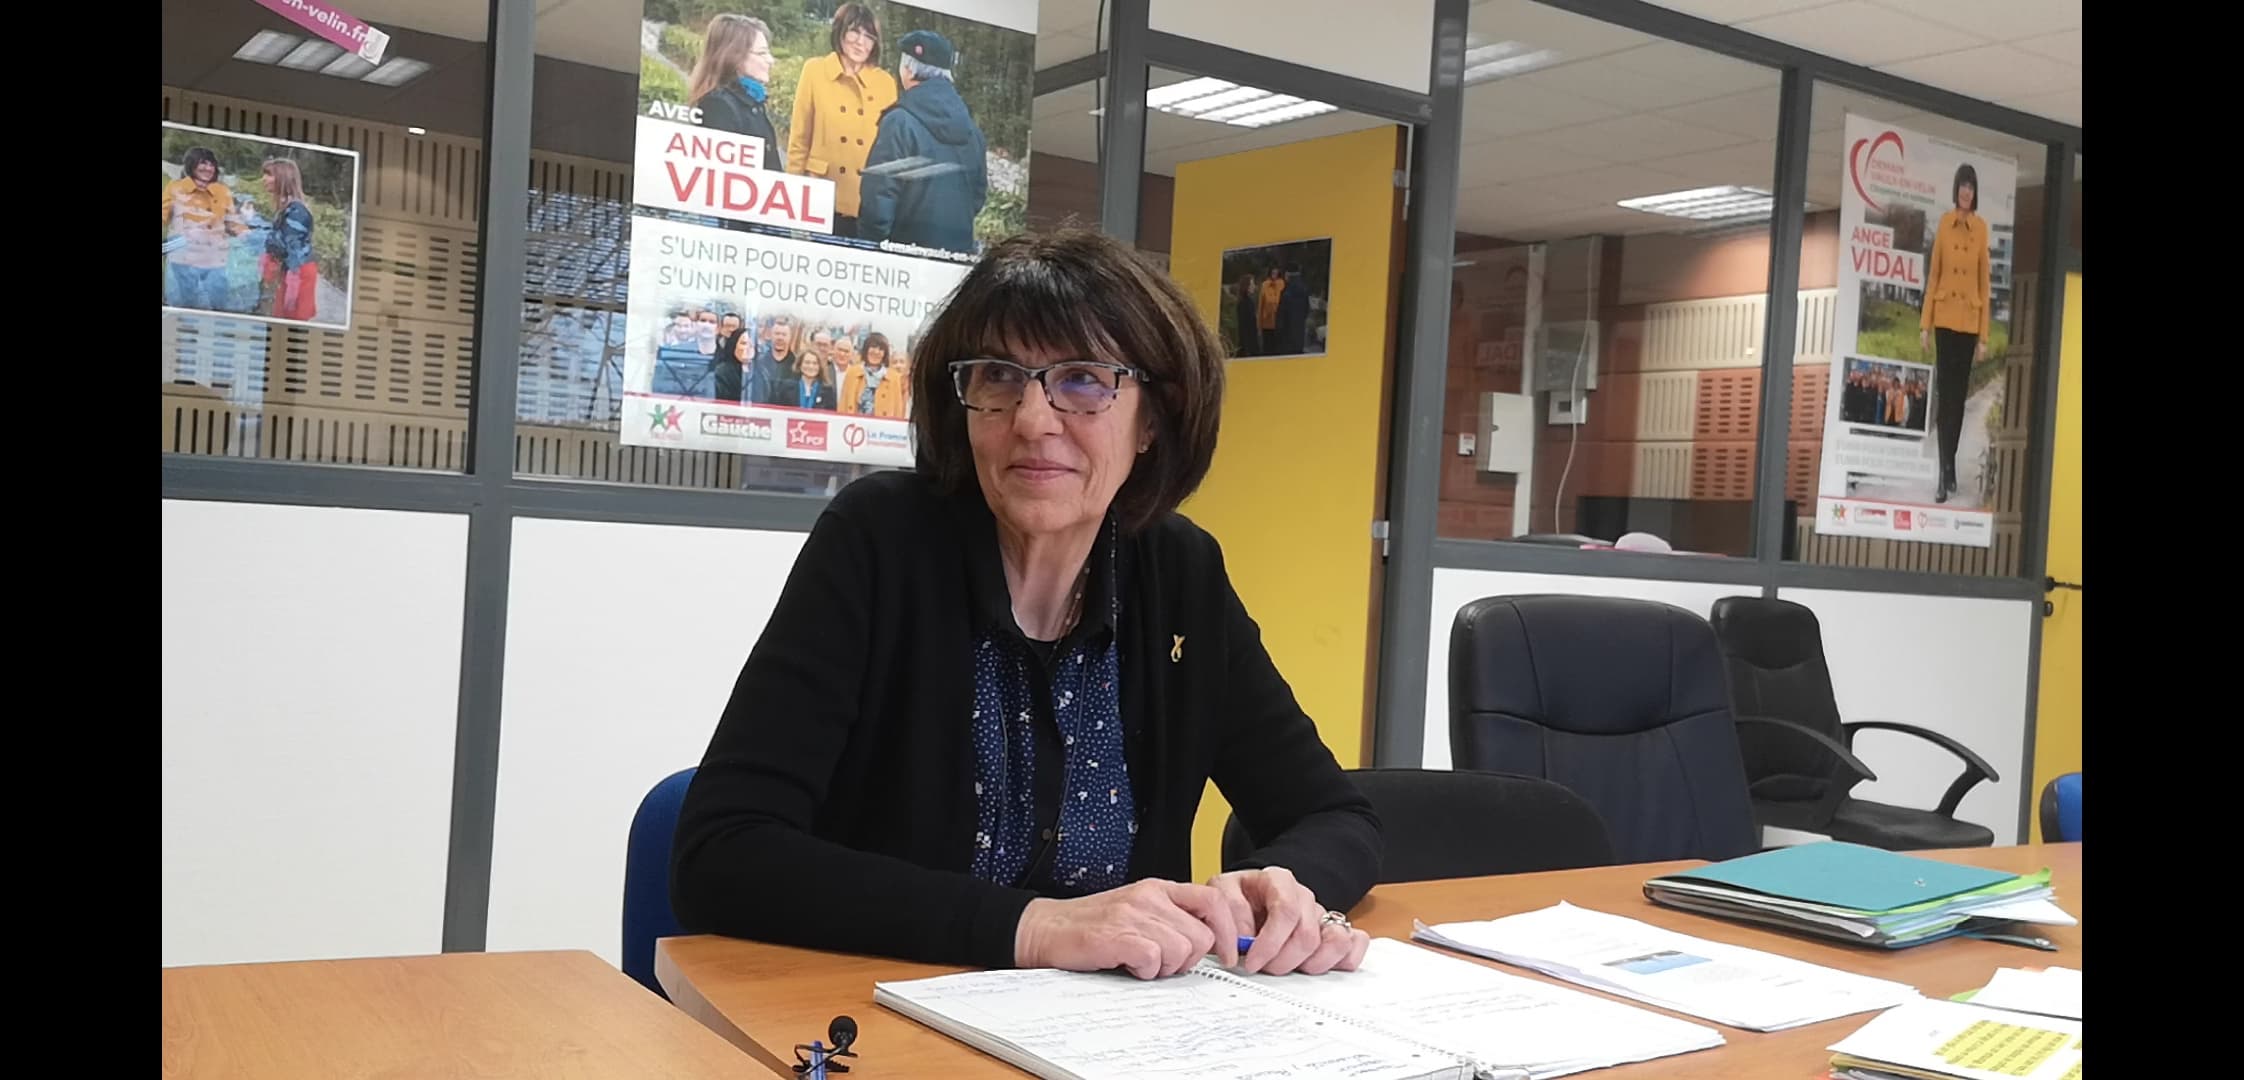 [Interview] Ange Vidal, une native vaudaise pour porter la liste “Demain, Vaulx-en-Velin” aux municipales – Partie 2